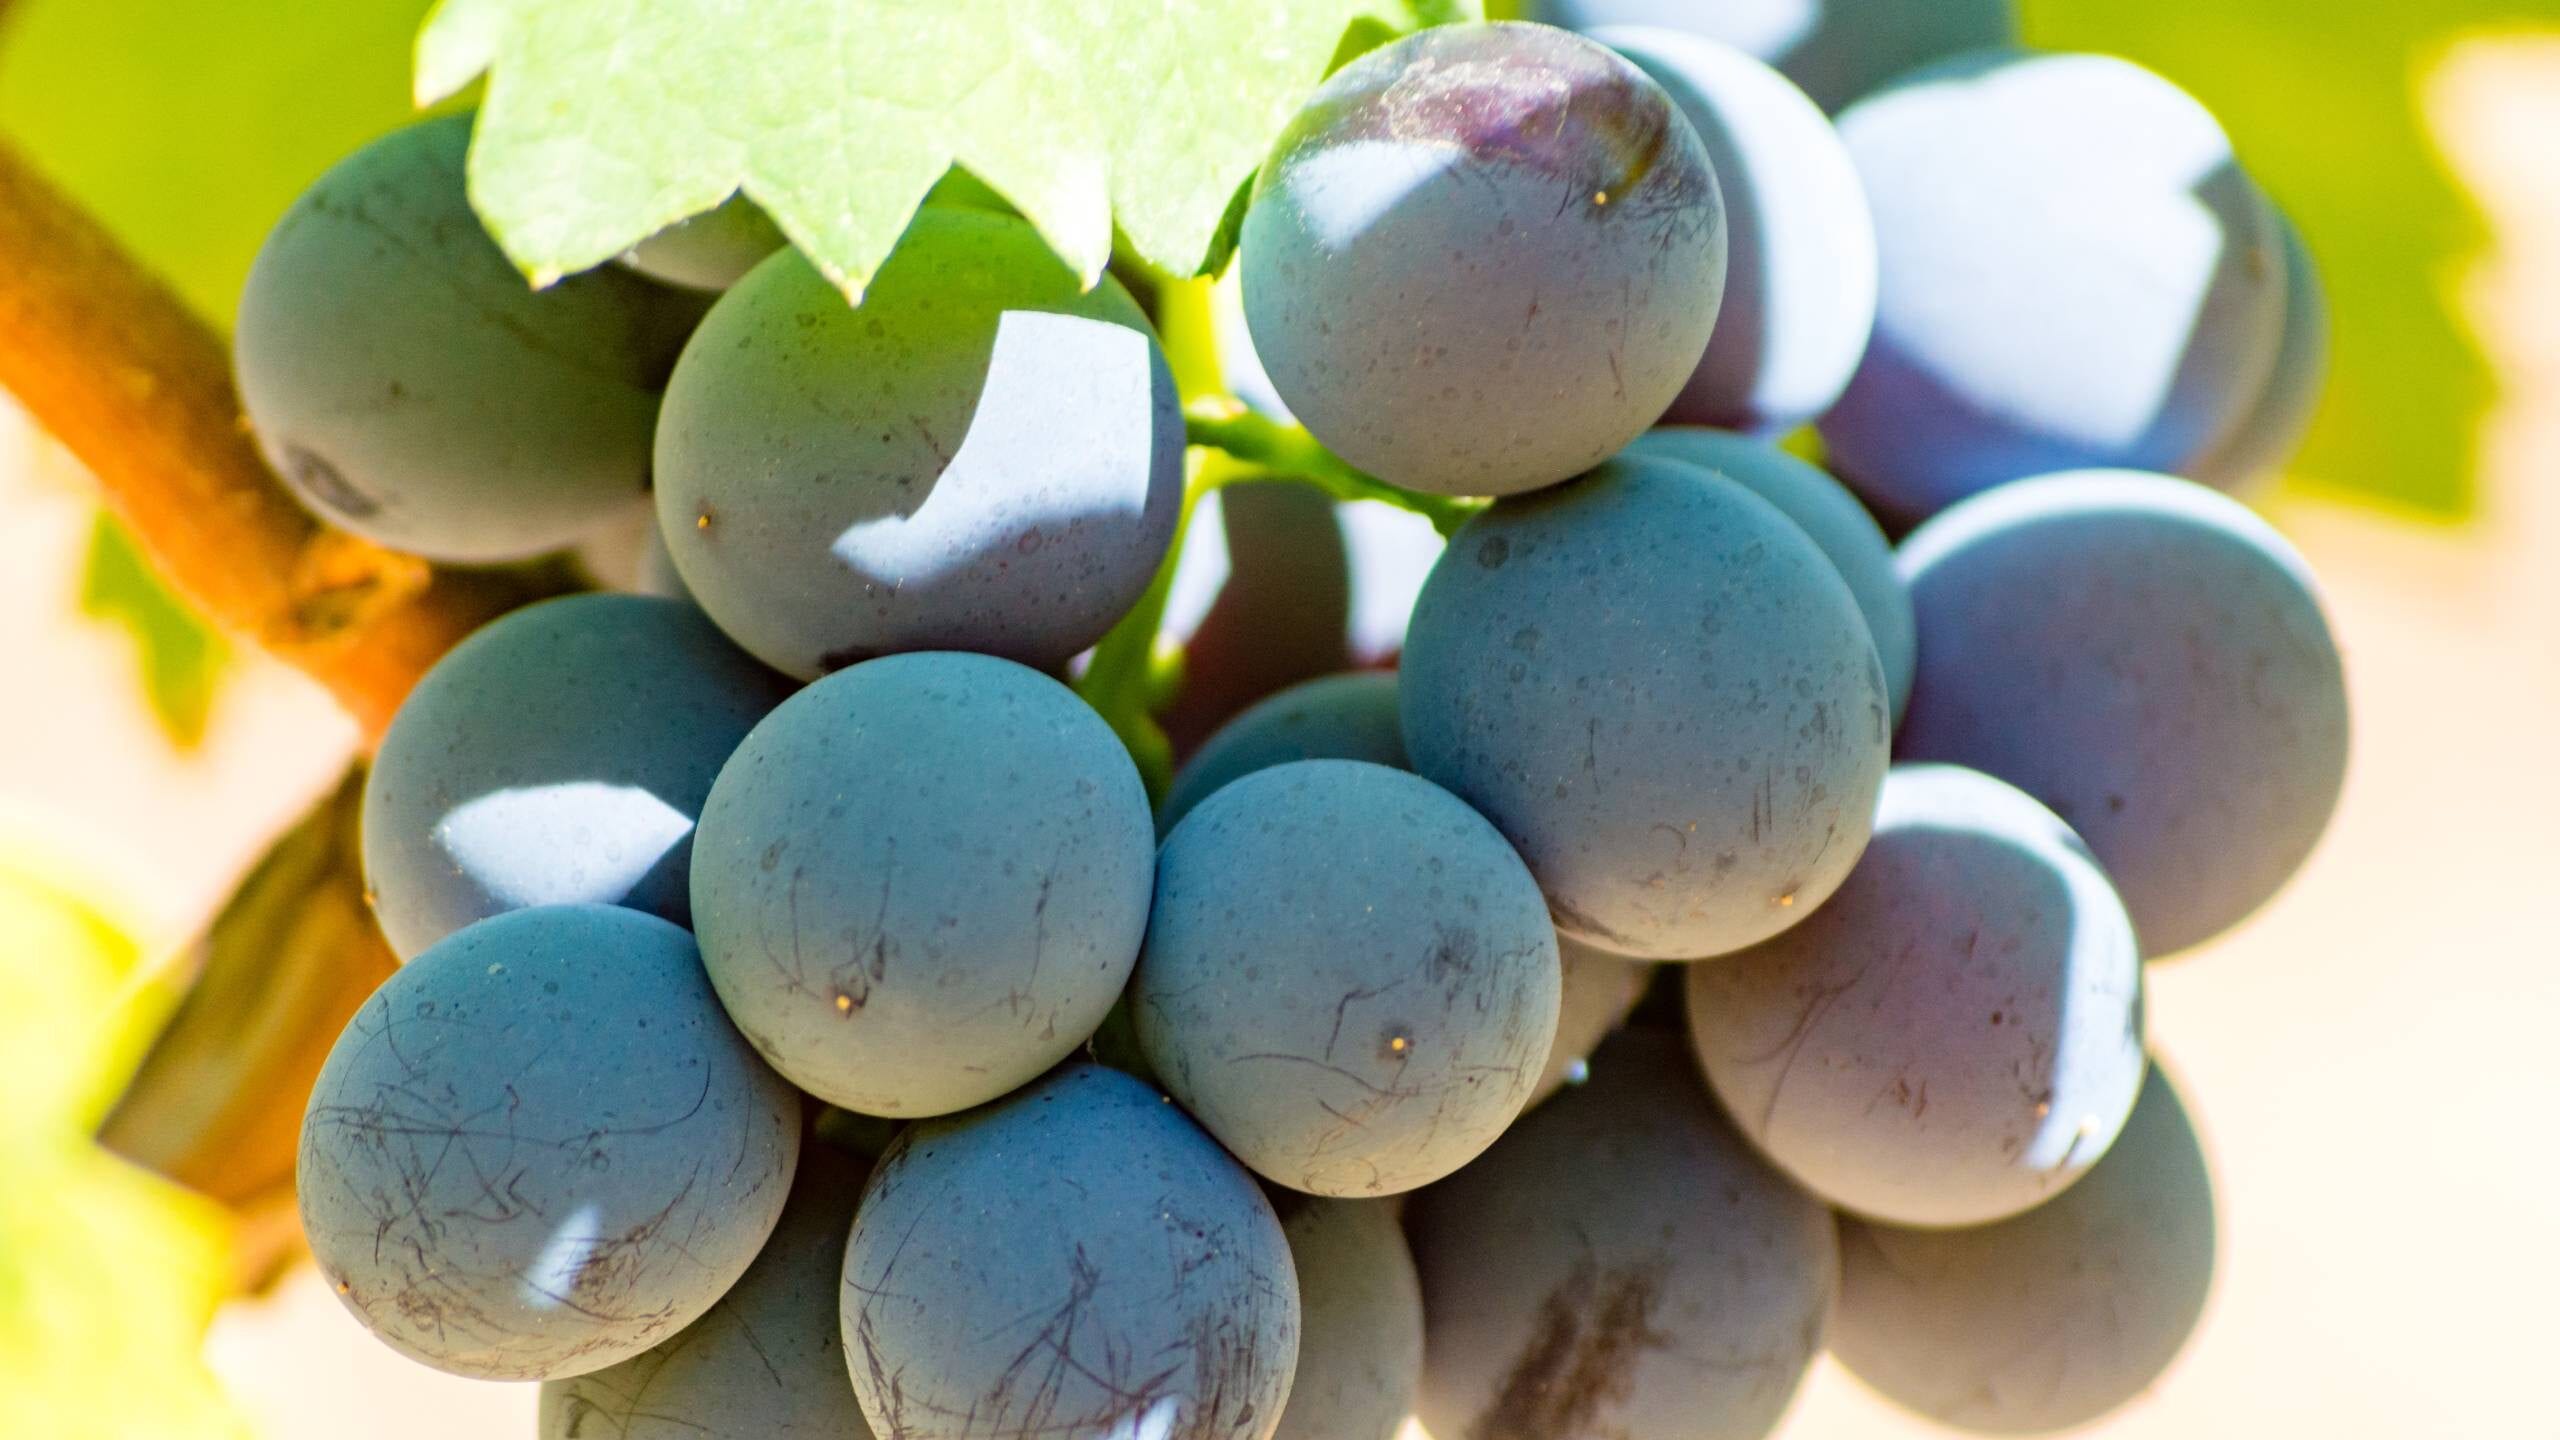 Carignan grapes